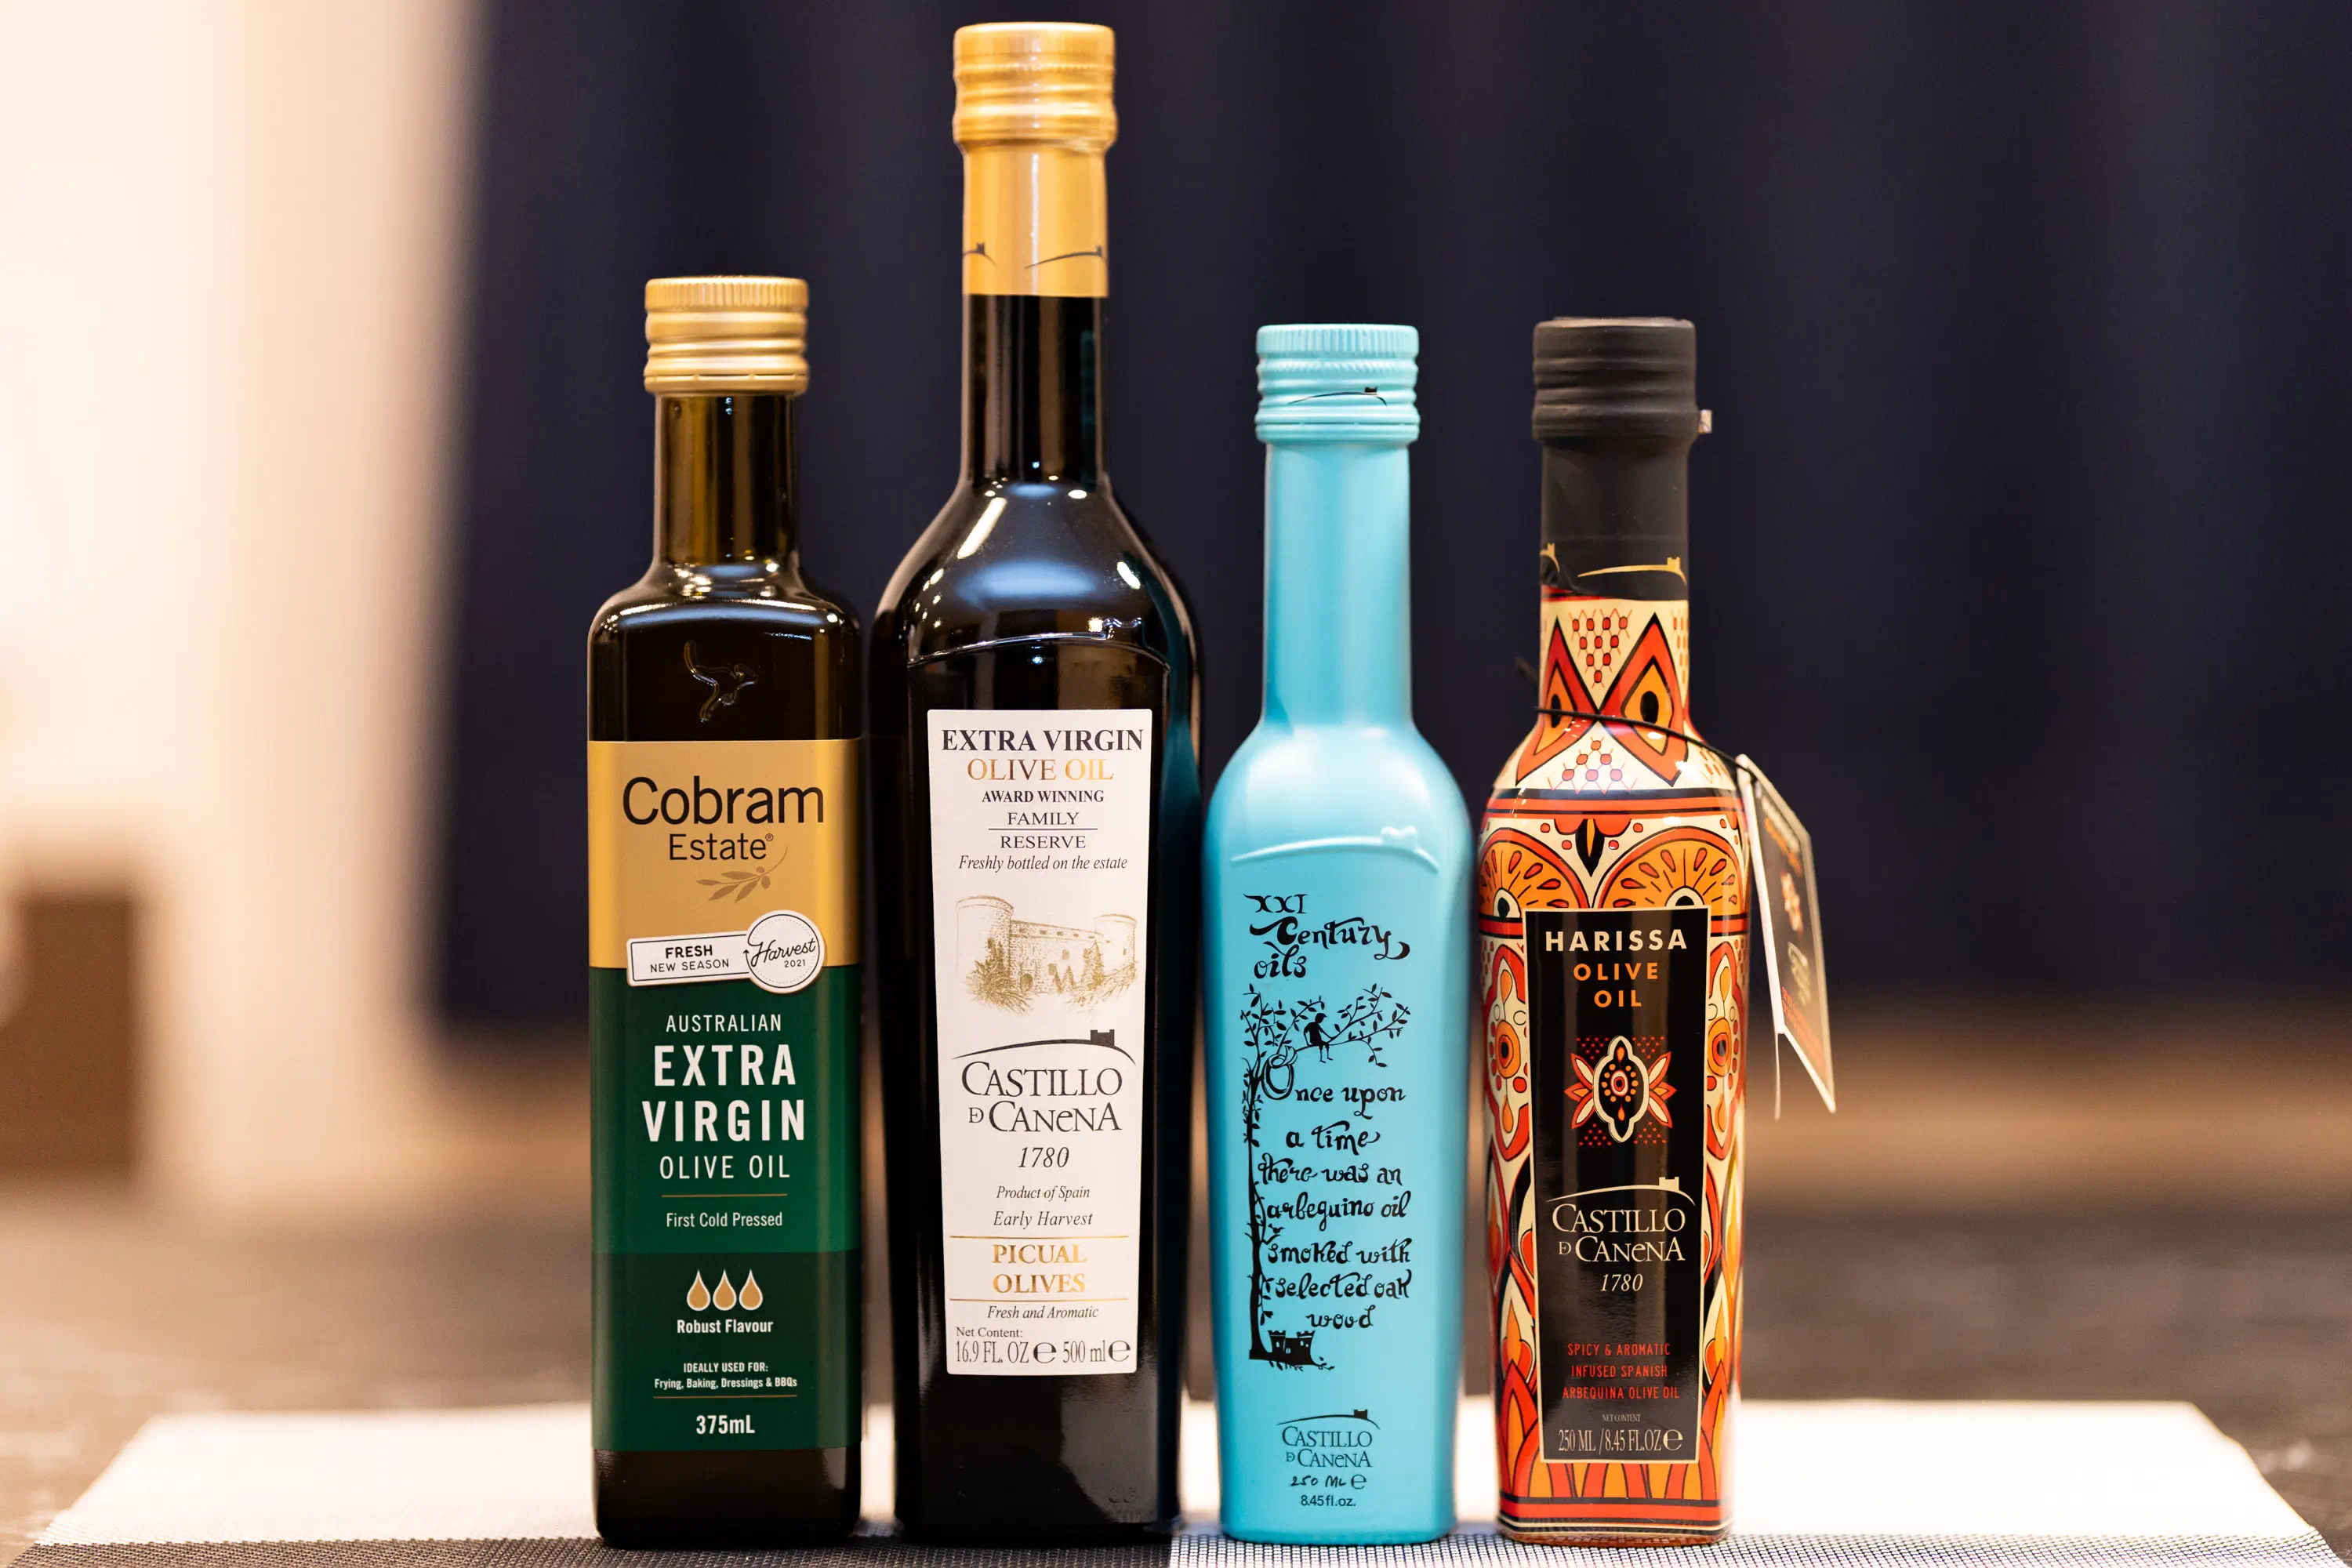 カスティージョカネナ（左から2番目）を含む4本のオリーブオイルの瓶